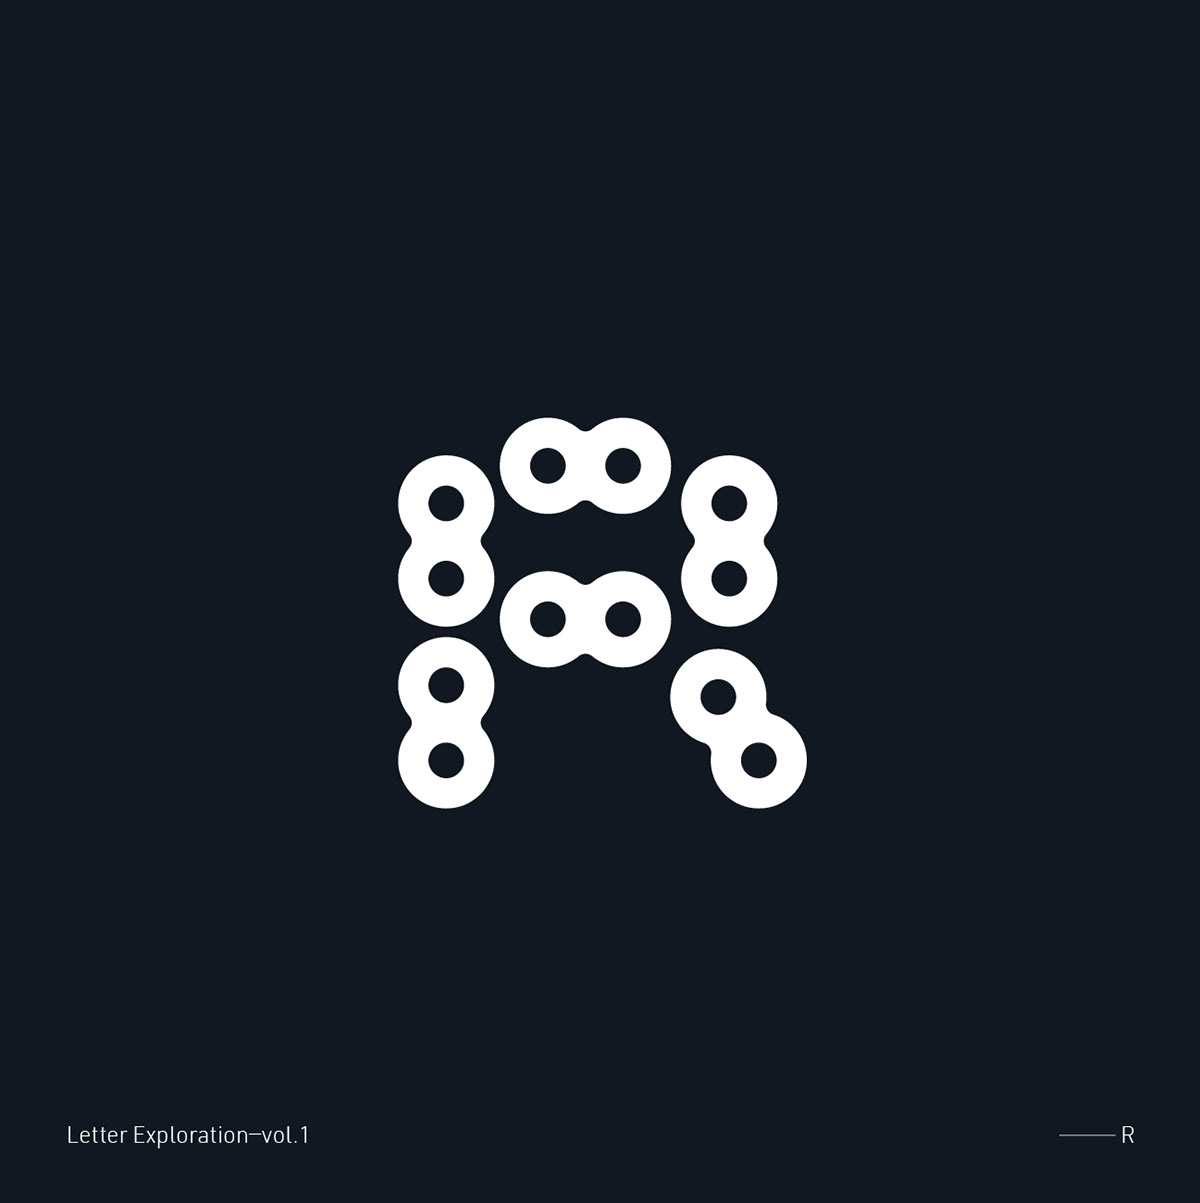 iconography letter exploration letter logo Letter Mark logofolio marks minimal logo symbols typography  